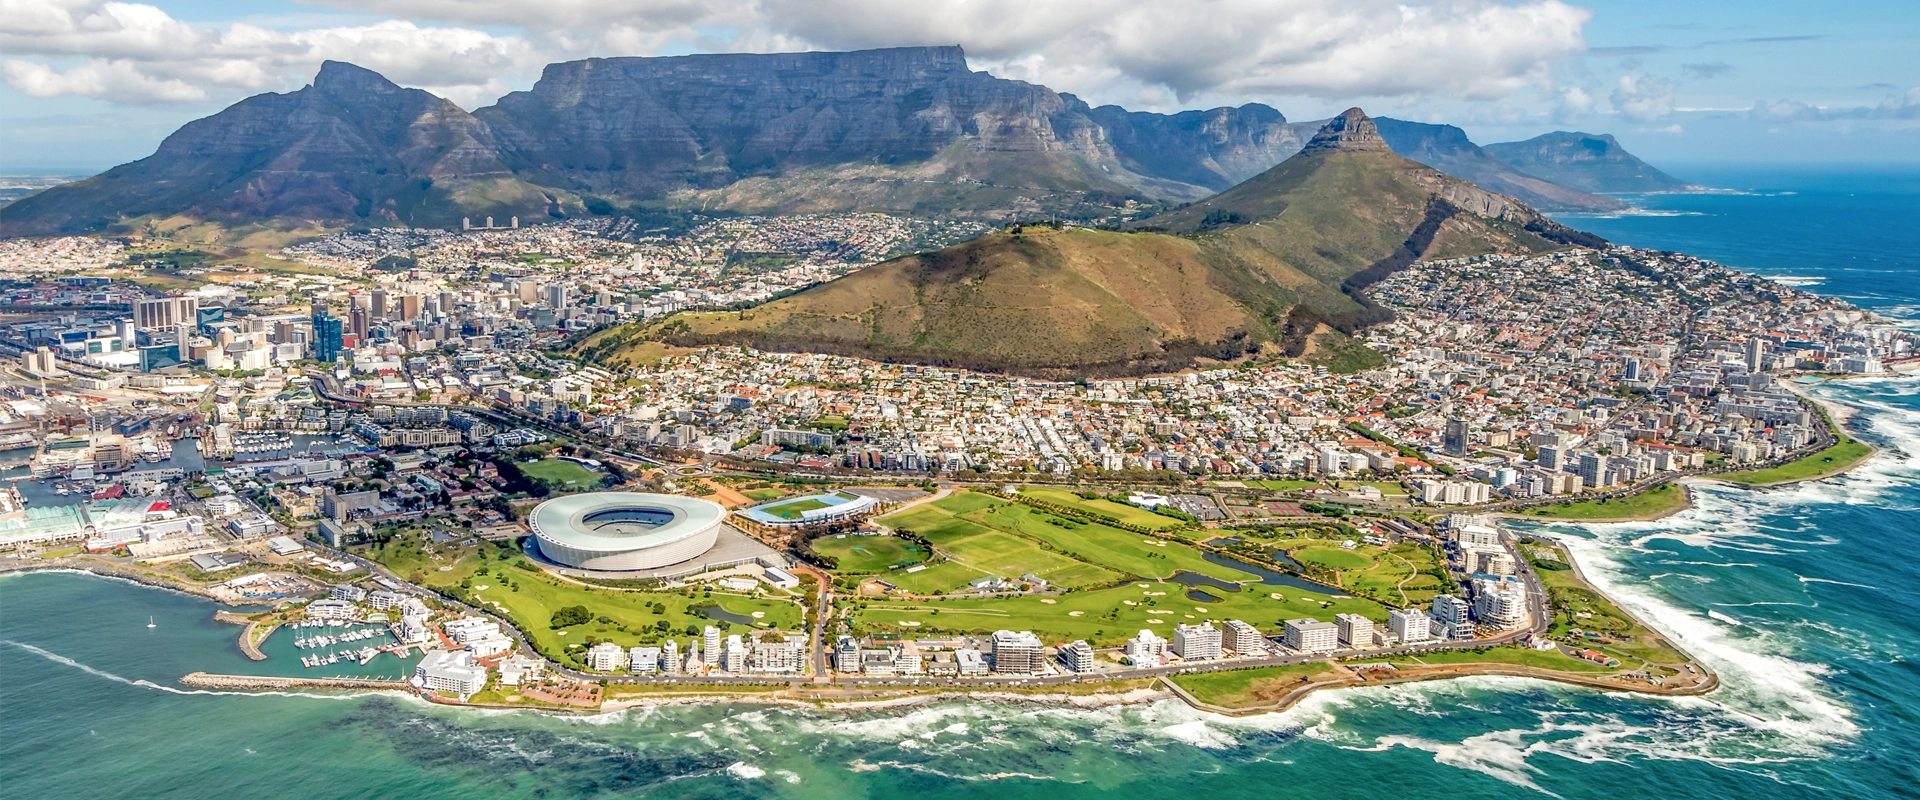 Guide francophone Afrique du Sud Cape Town